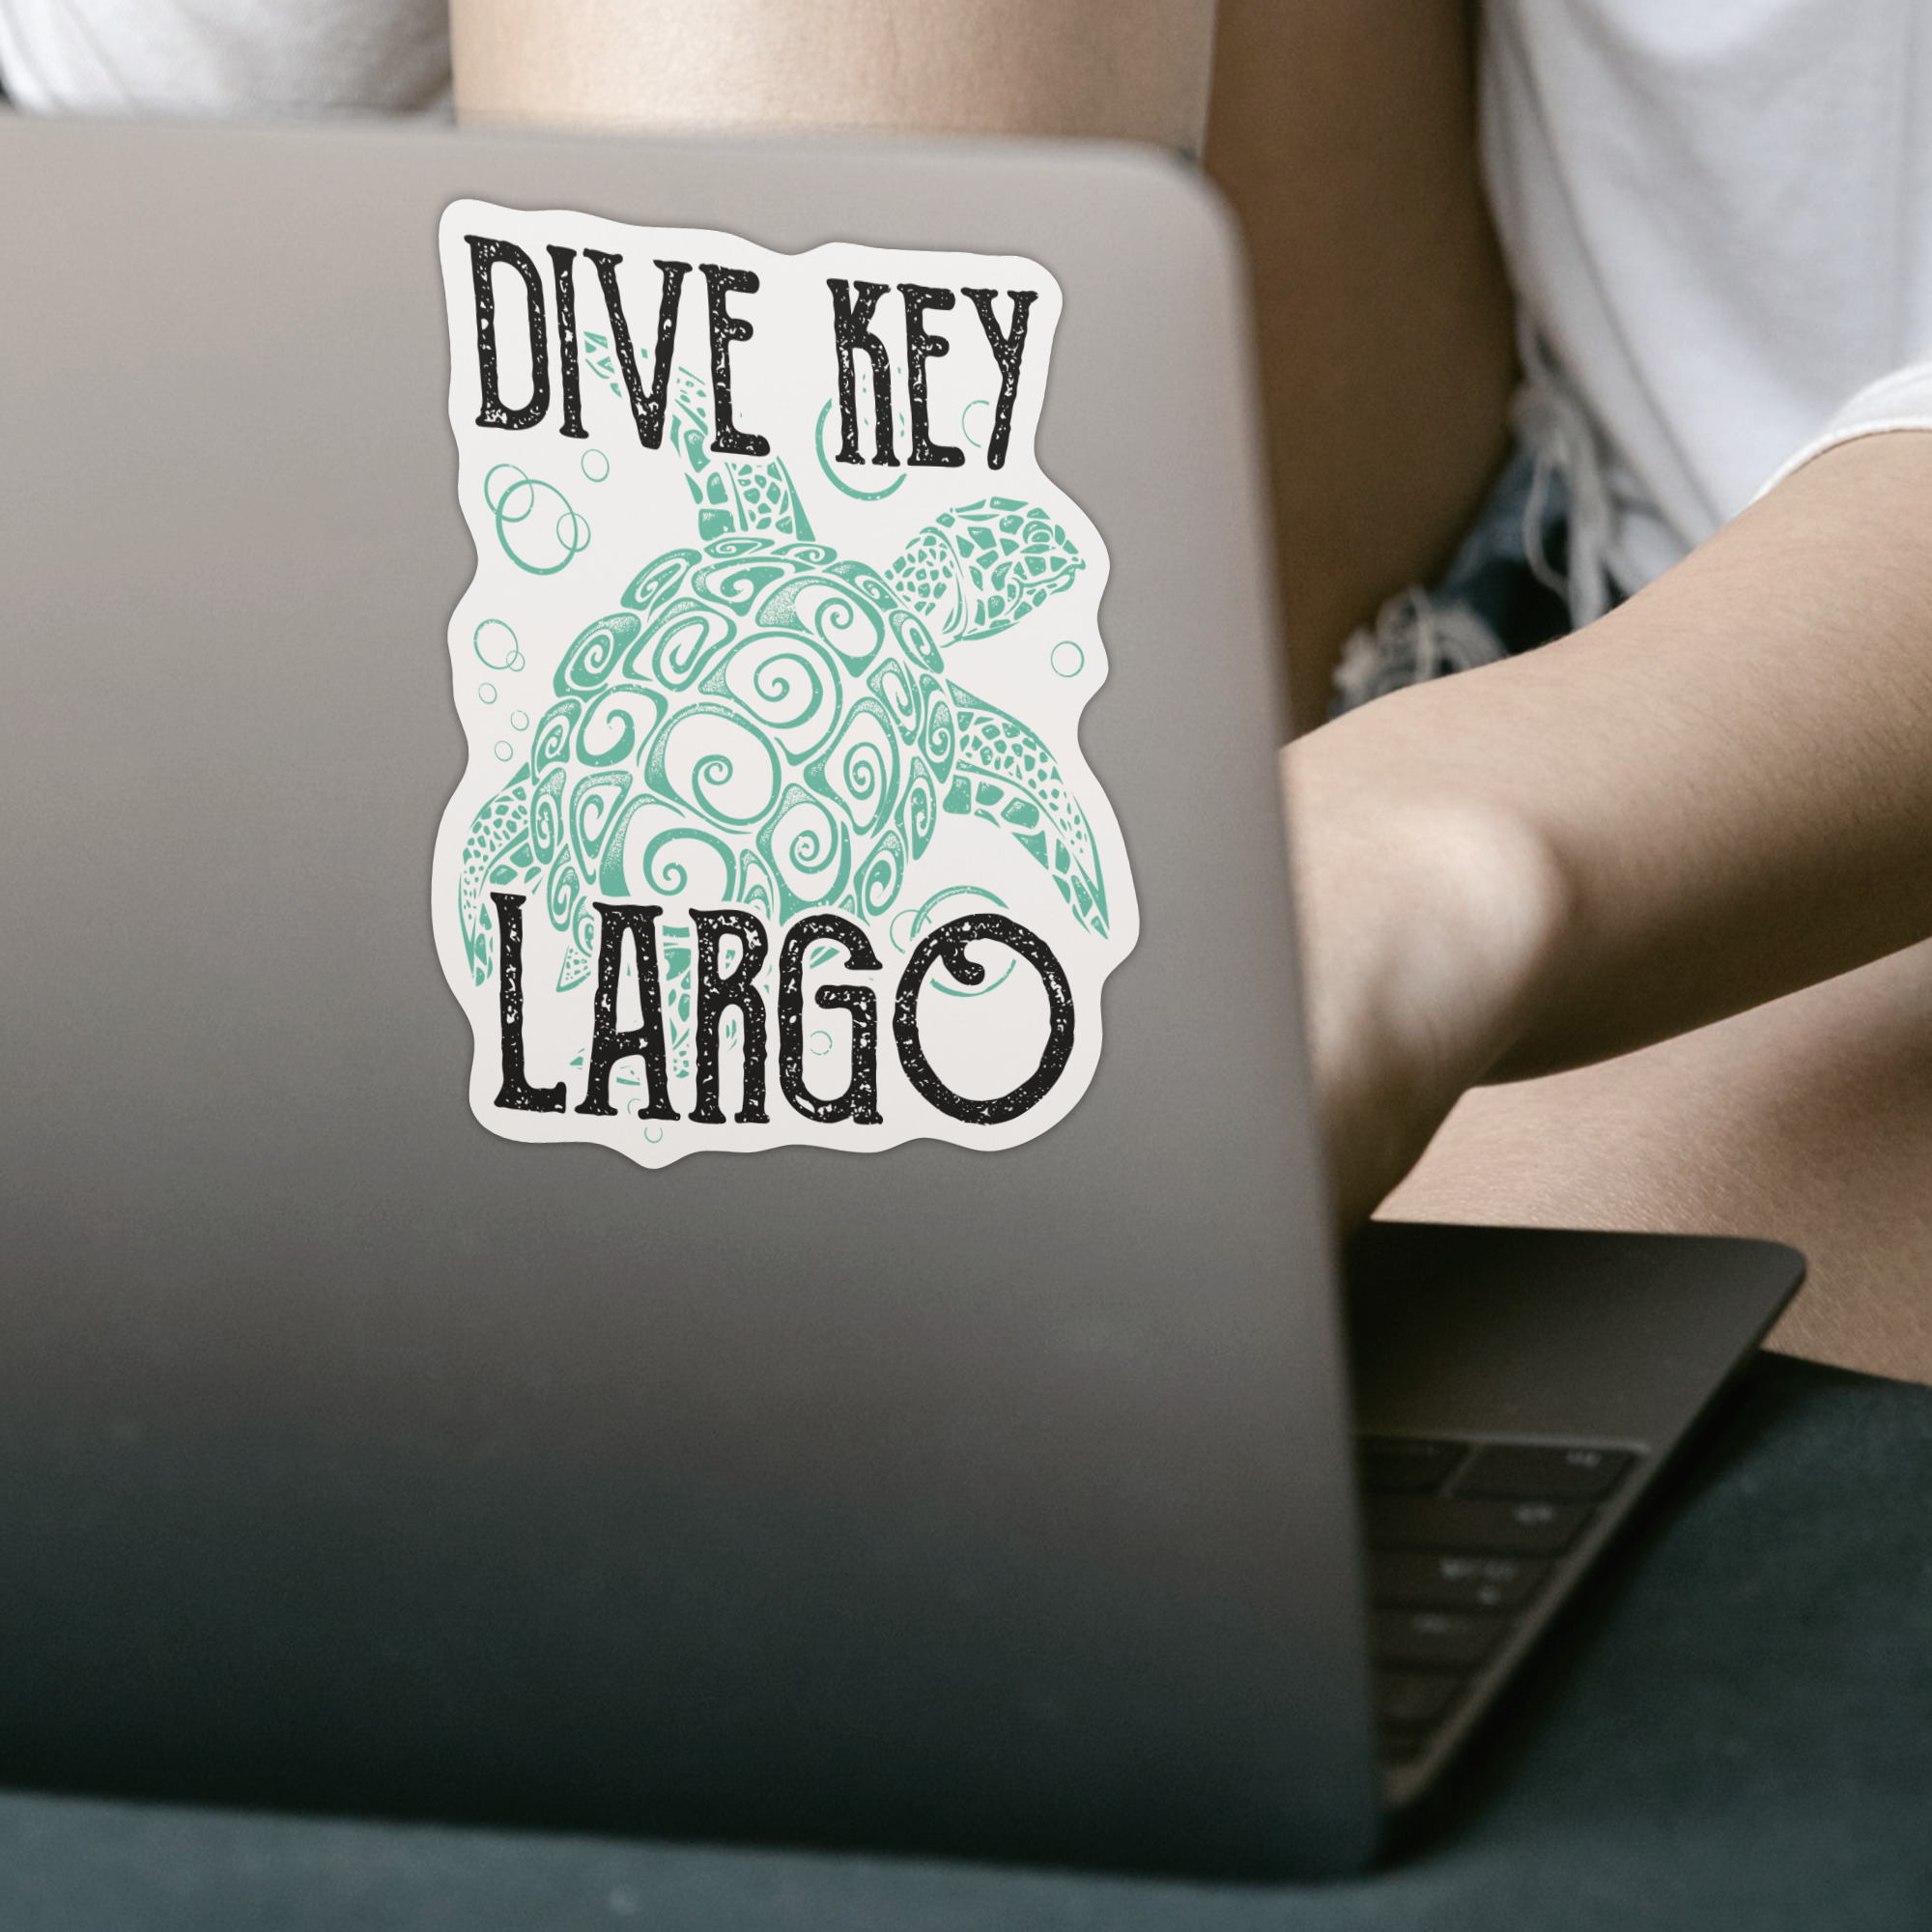 Dive Key Largo Sticker - DESIGNSBYJNK5.COM